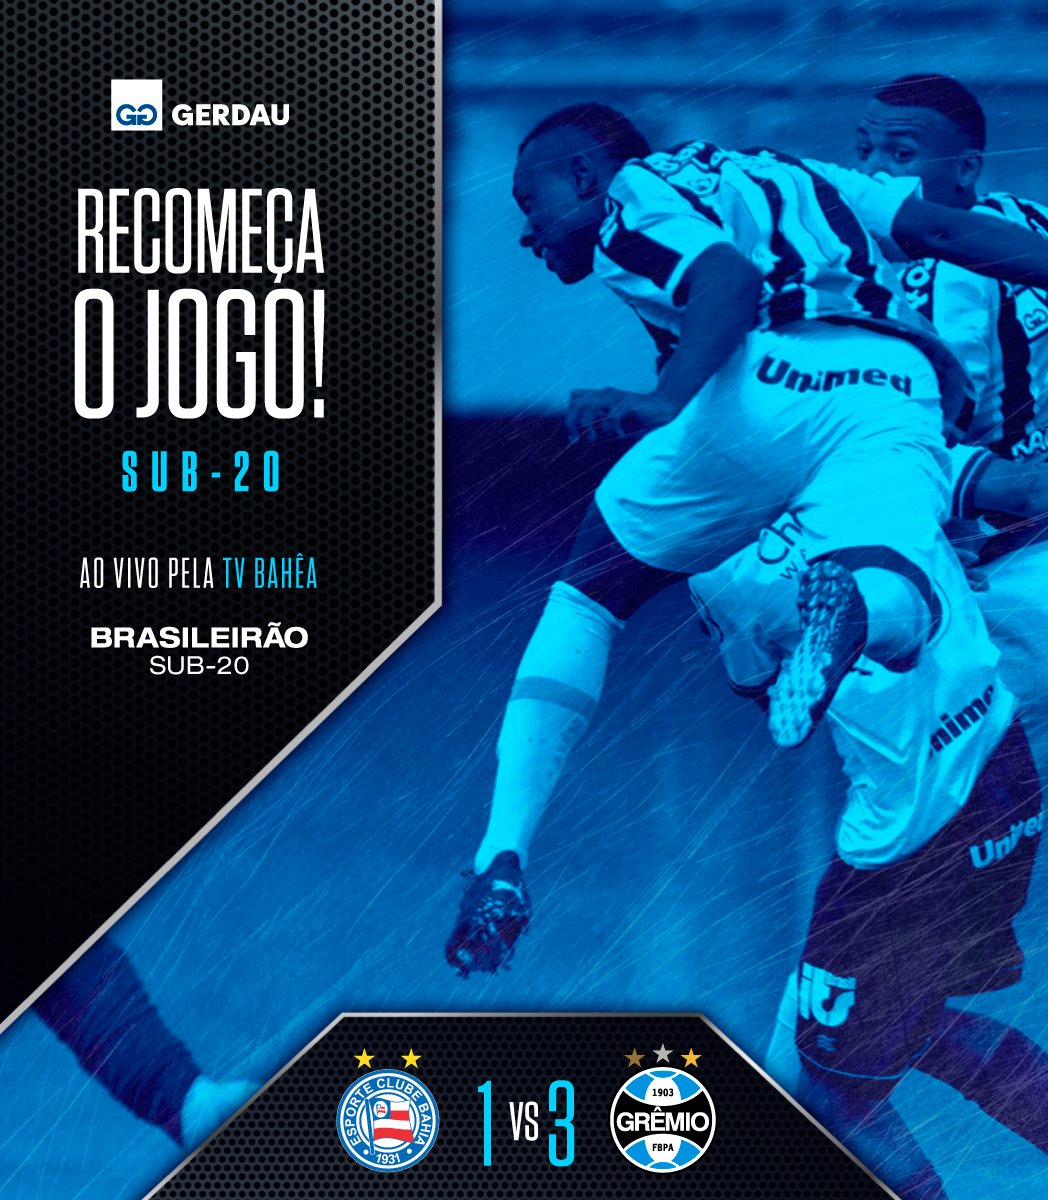 ▶️ Recomeça a partida! VAMOS, GURIZADA!
Bahia 1x3 #Grêmio
📺 youtube.com/live/Dcprn7ObX…
🇪🇪 #Sub20 #BrasileirãoSub20 #BaseGremista